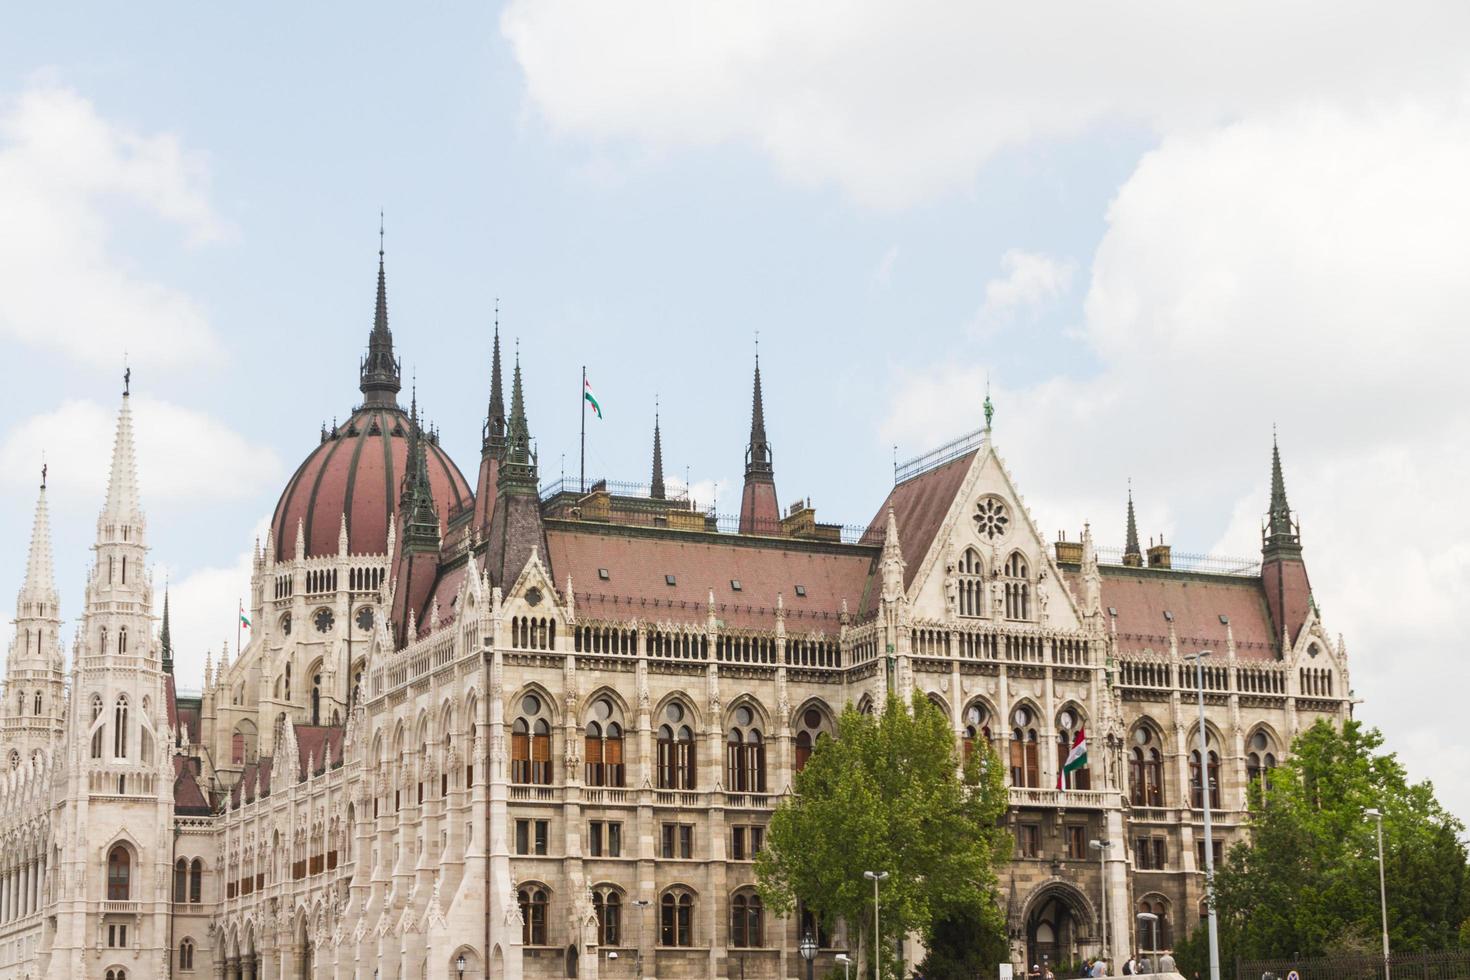 Budapest parliament building photo